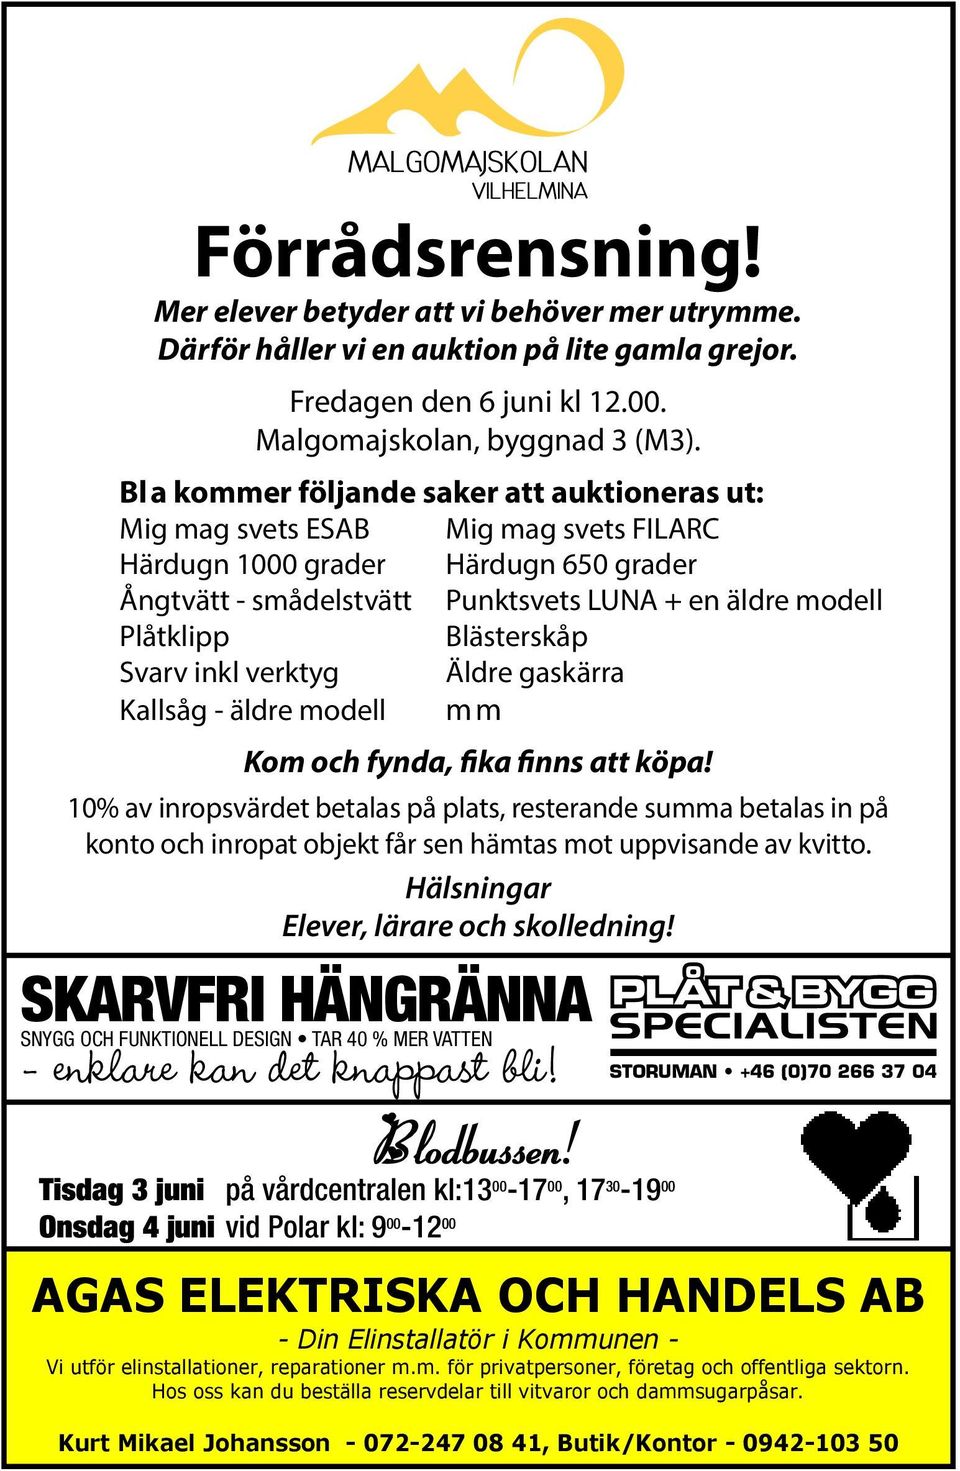 Blästerskåp Svarv inkl verktyg Äldre gaskärra Kallsåg - äldre modell mm Kom och fynda, fika finns att köpa!